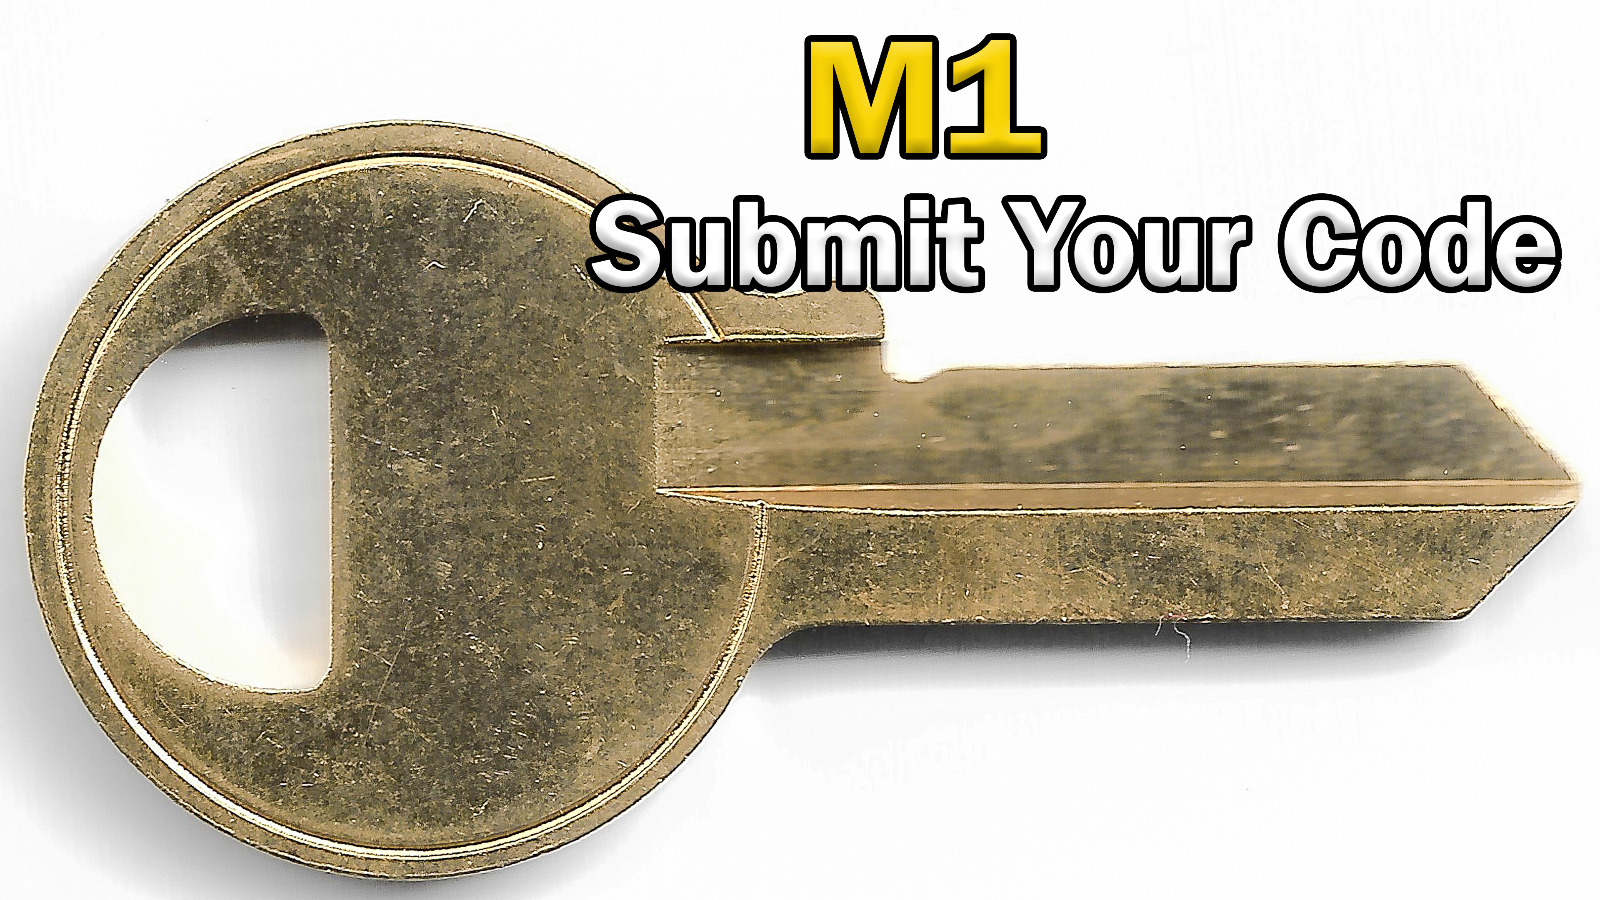 Master Lock (M1) 4 Pin Code Cut Key | Send Your Code, We Cut It | 